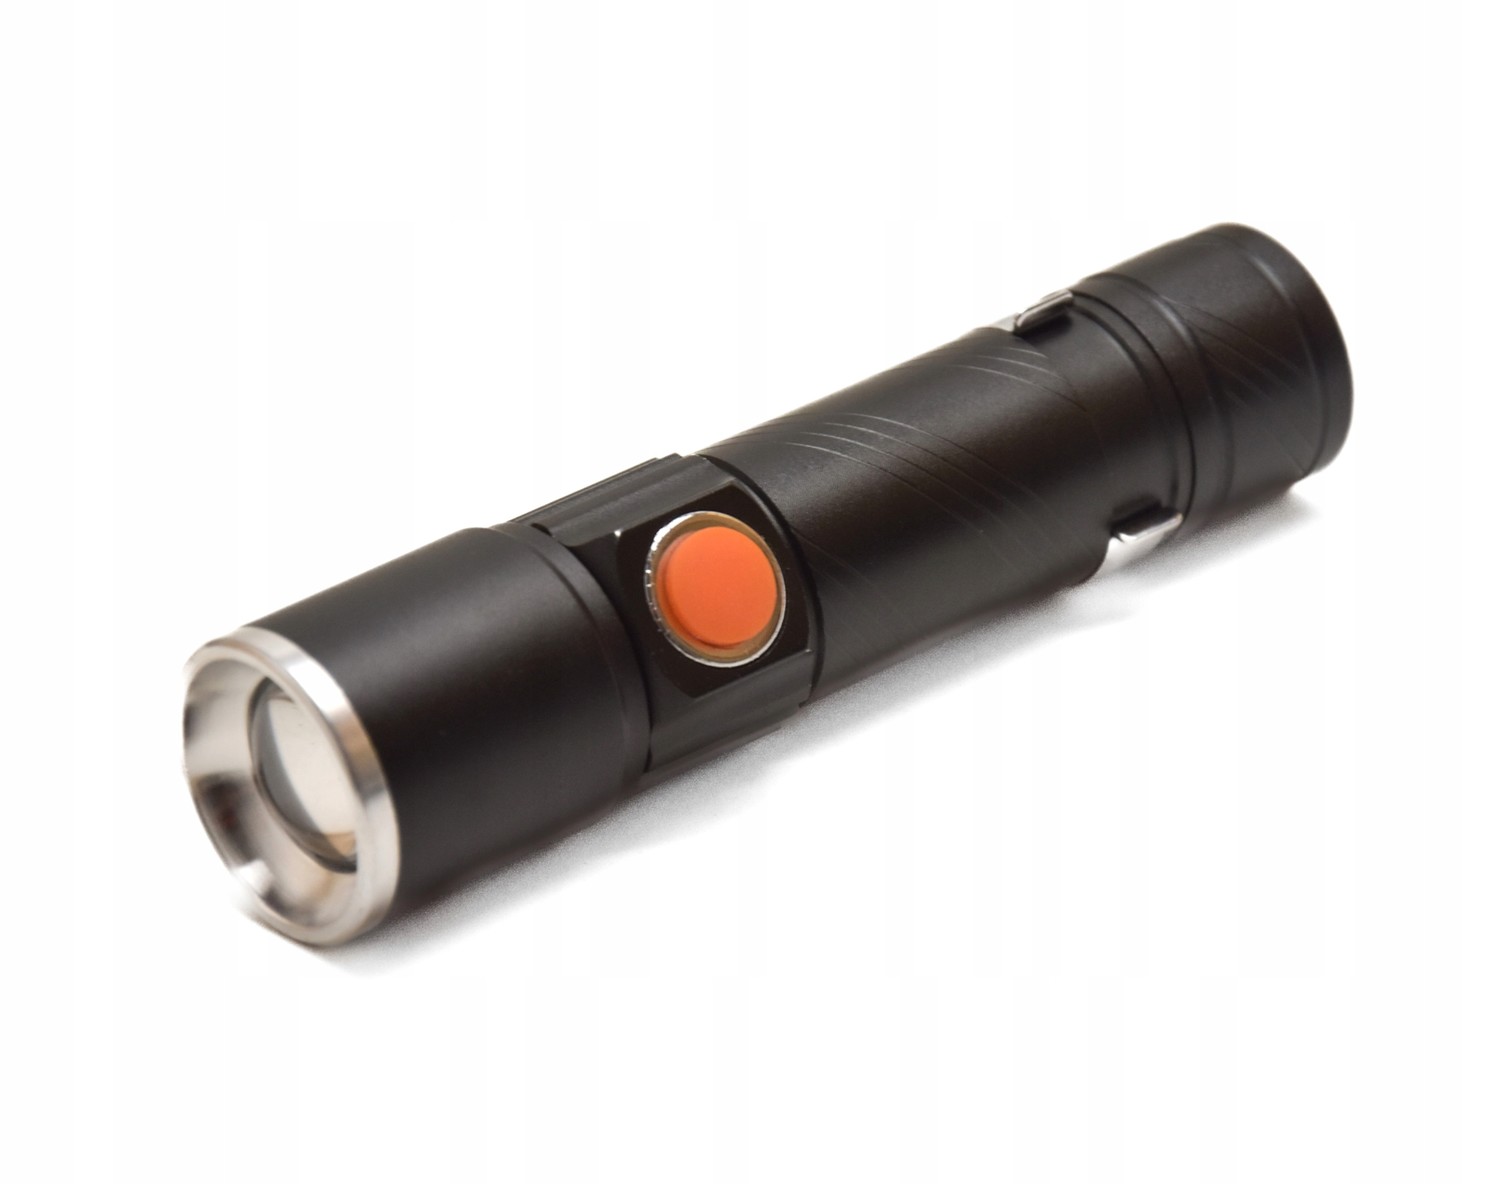 Svítilna kapesní s klipem COB LED ZOOM Flashlight USB nabíjení